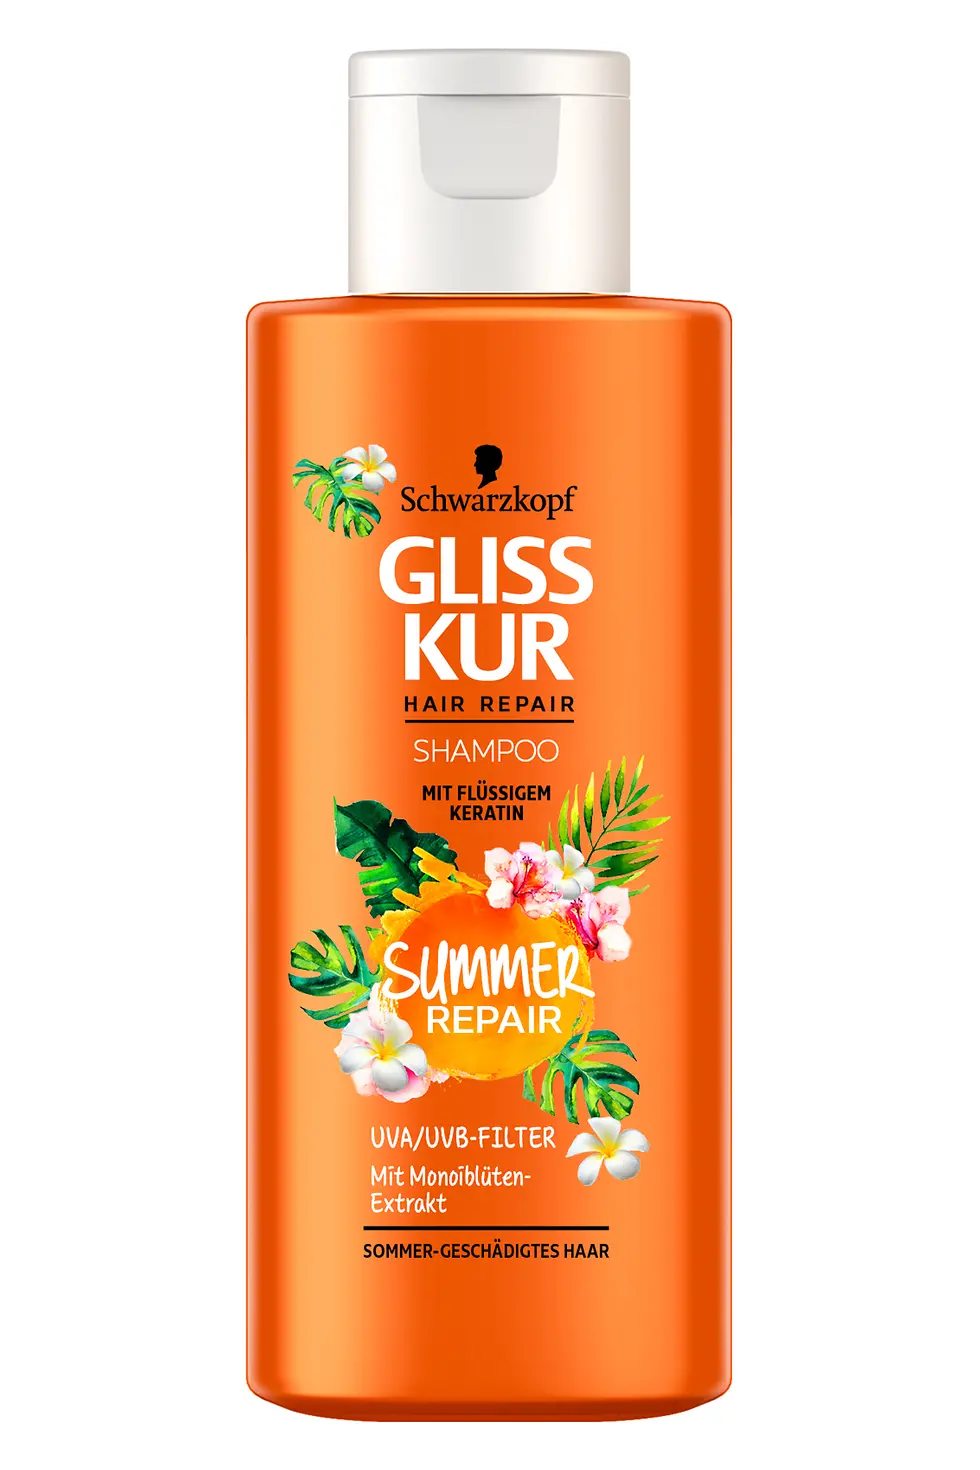 Gliss Kur Summer Repair Shampoo, 100ml